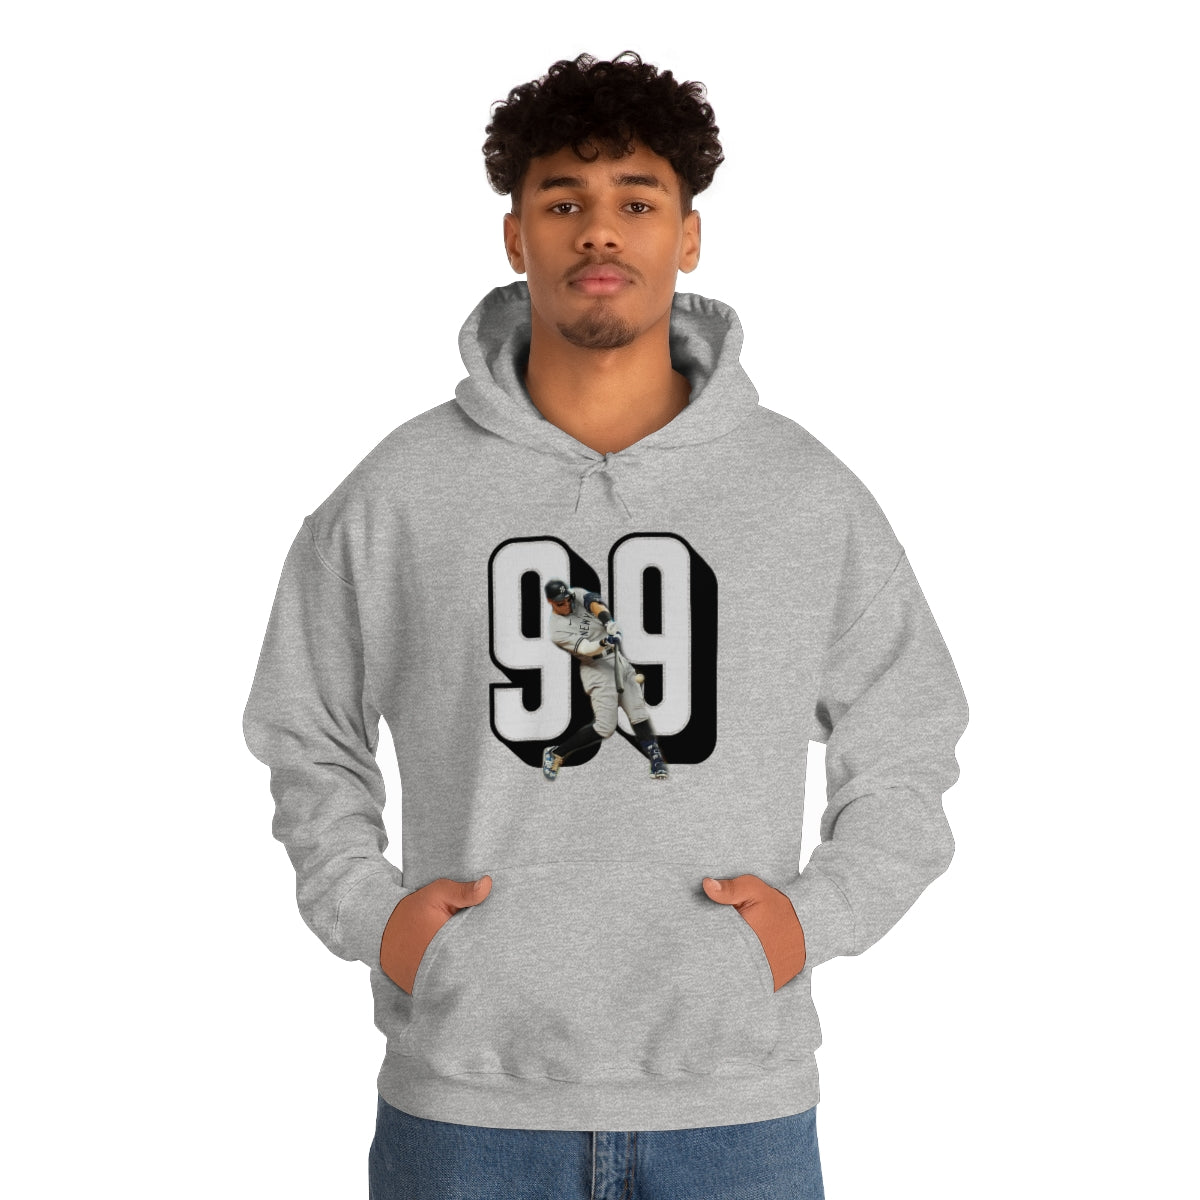 Yankees Aaron Judge 99 Sweatshirt - IsGoodBrand